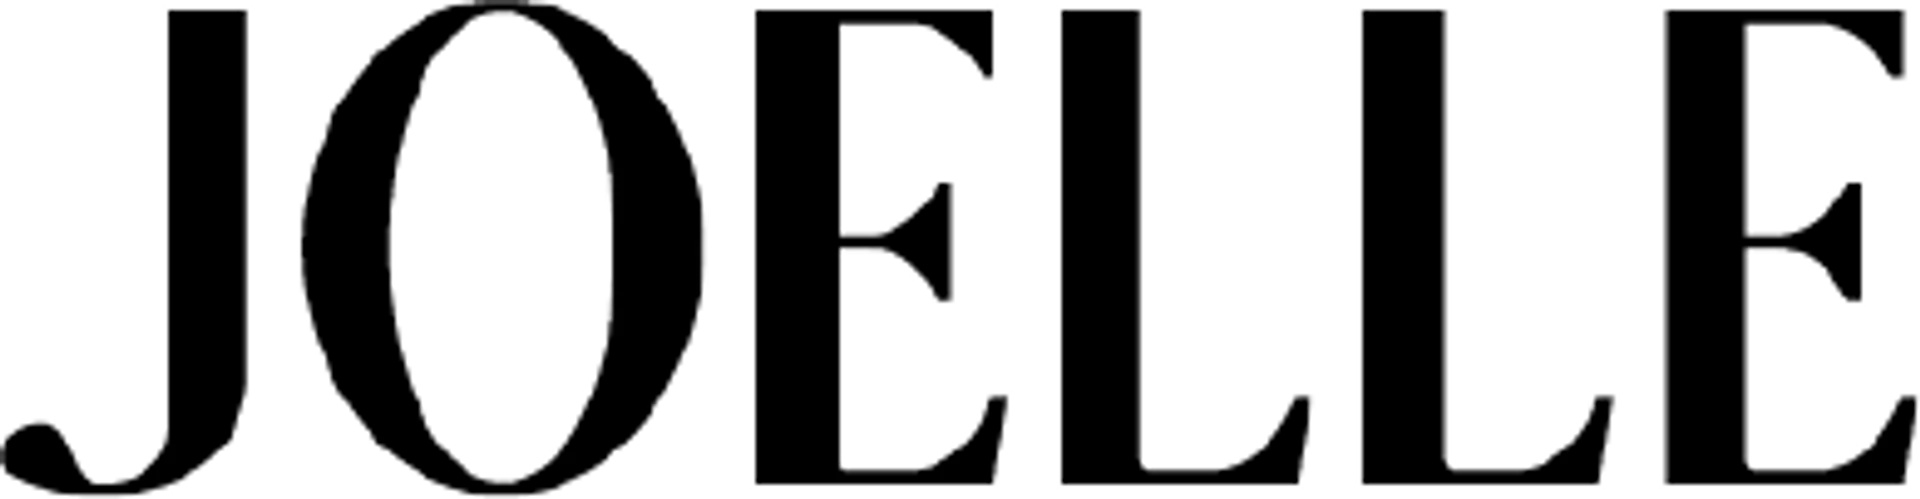 JOELLE COLLECTION logo de circulaires